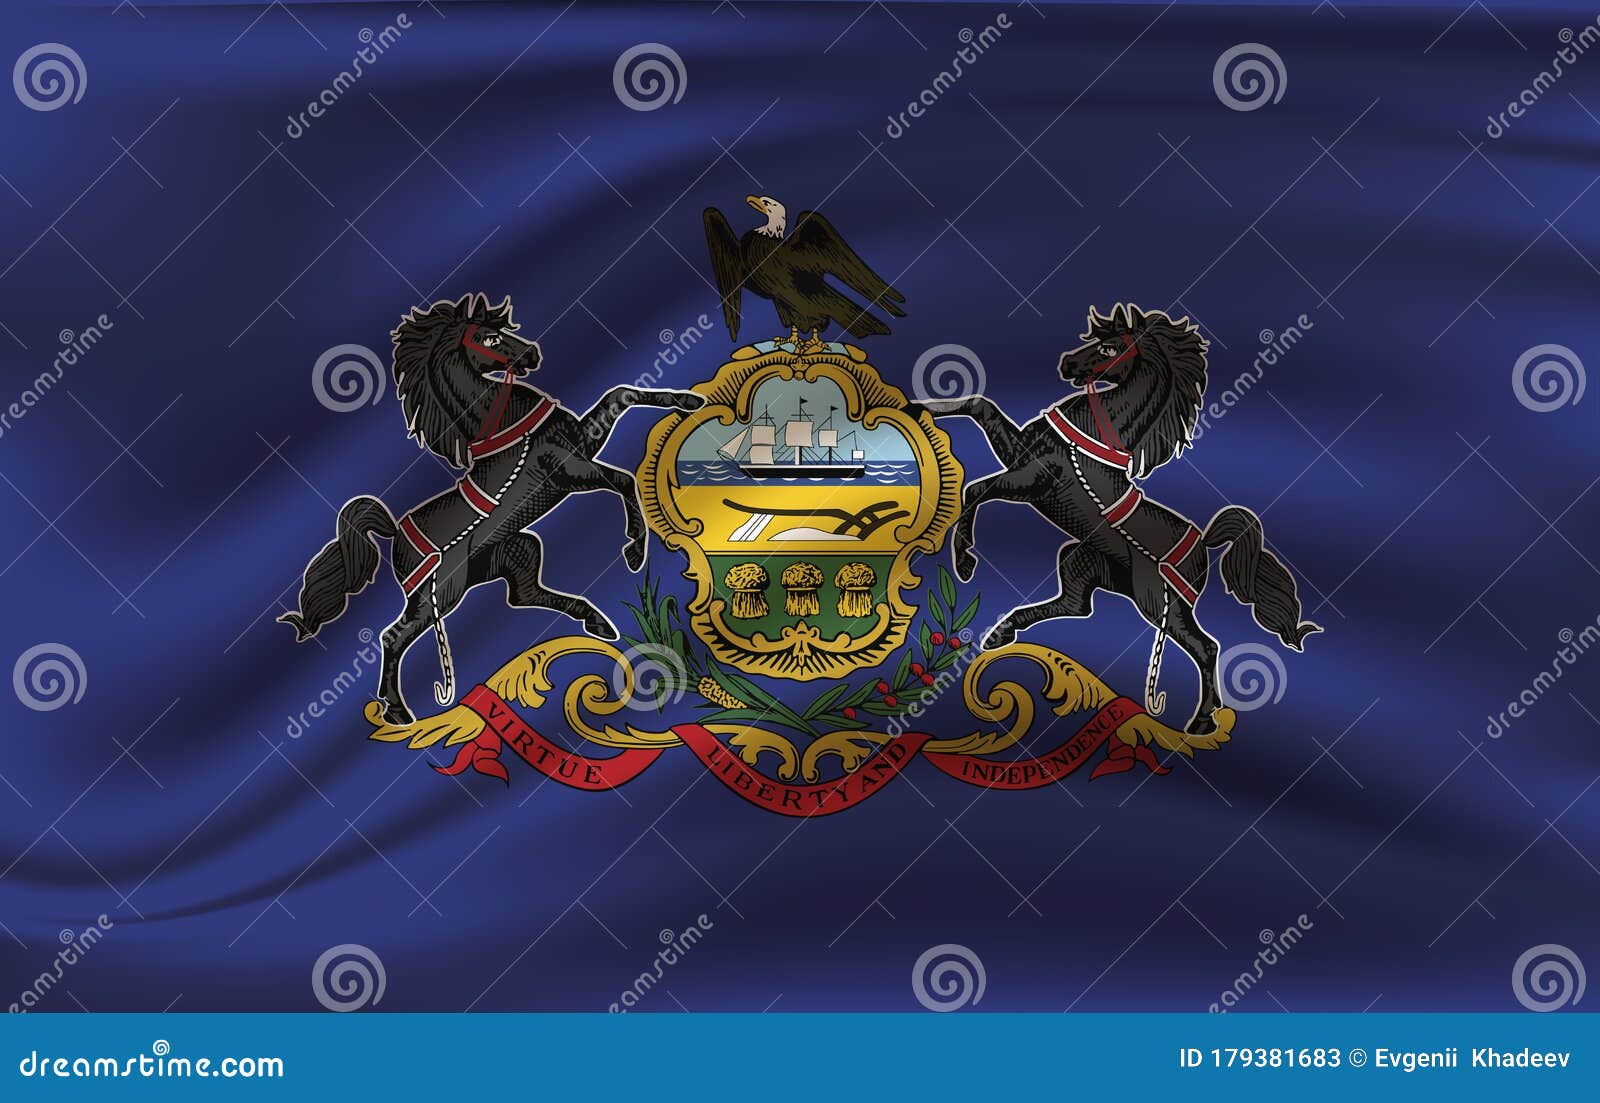 waving flag of pensilvania